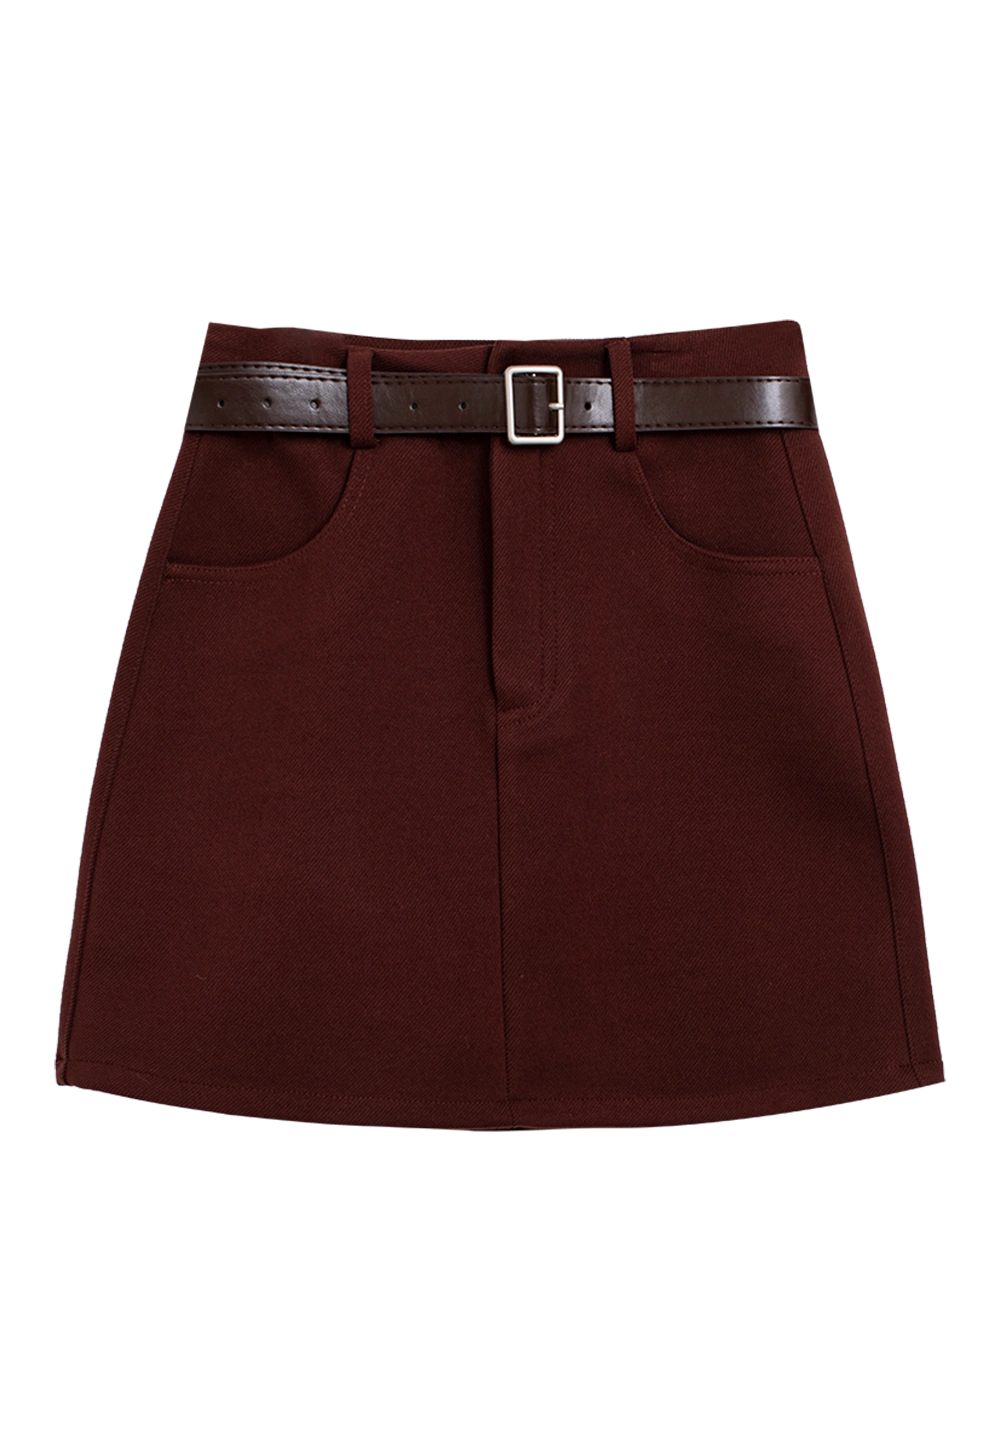 Women's A-Line Mini Skirt with Belt - High Waist Casual Skirt